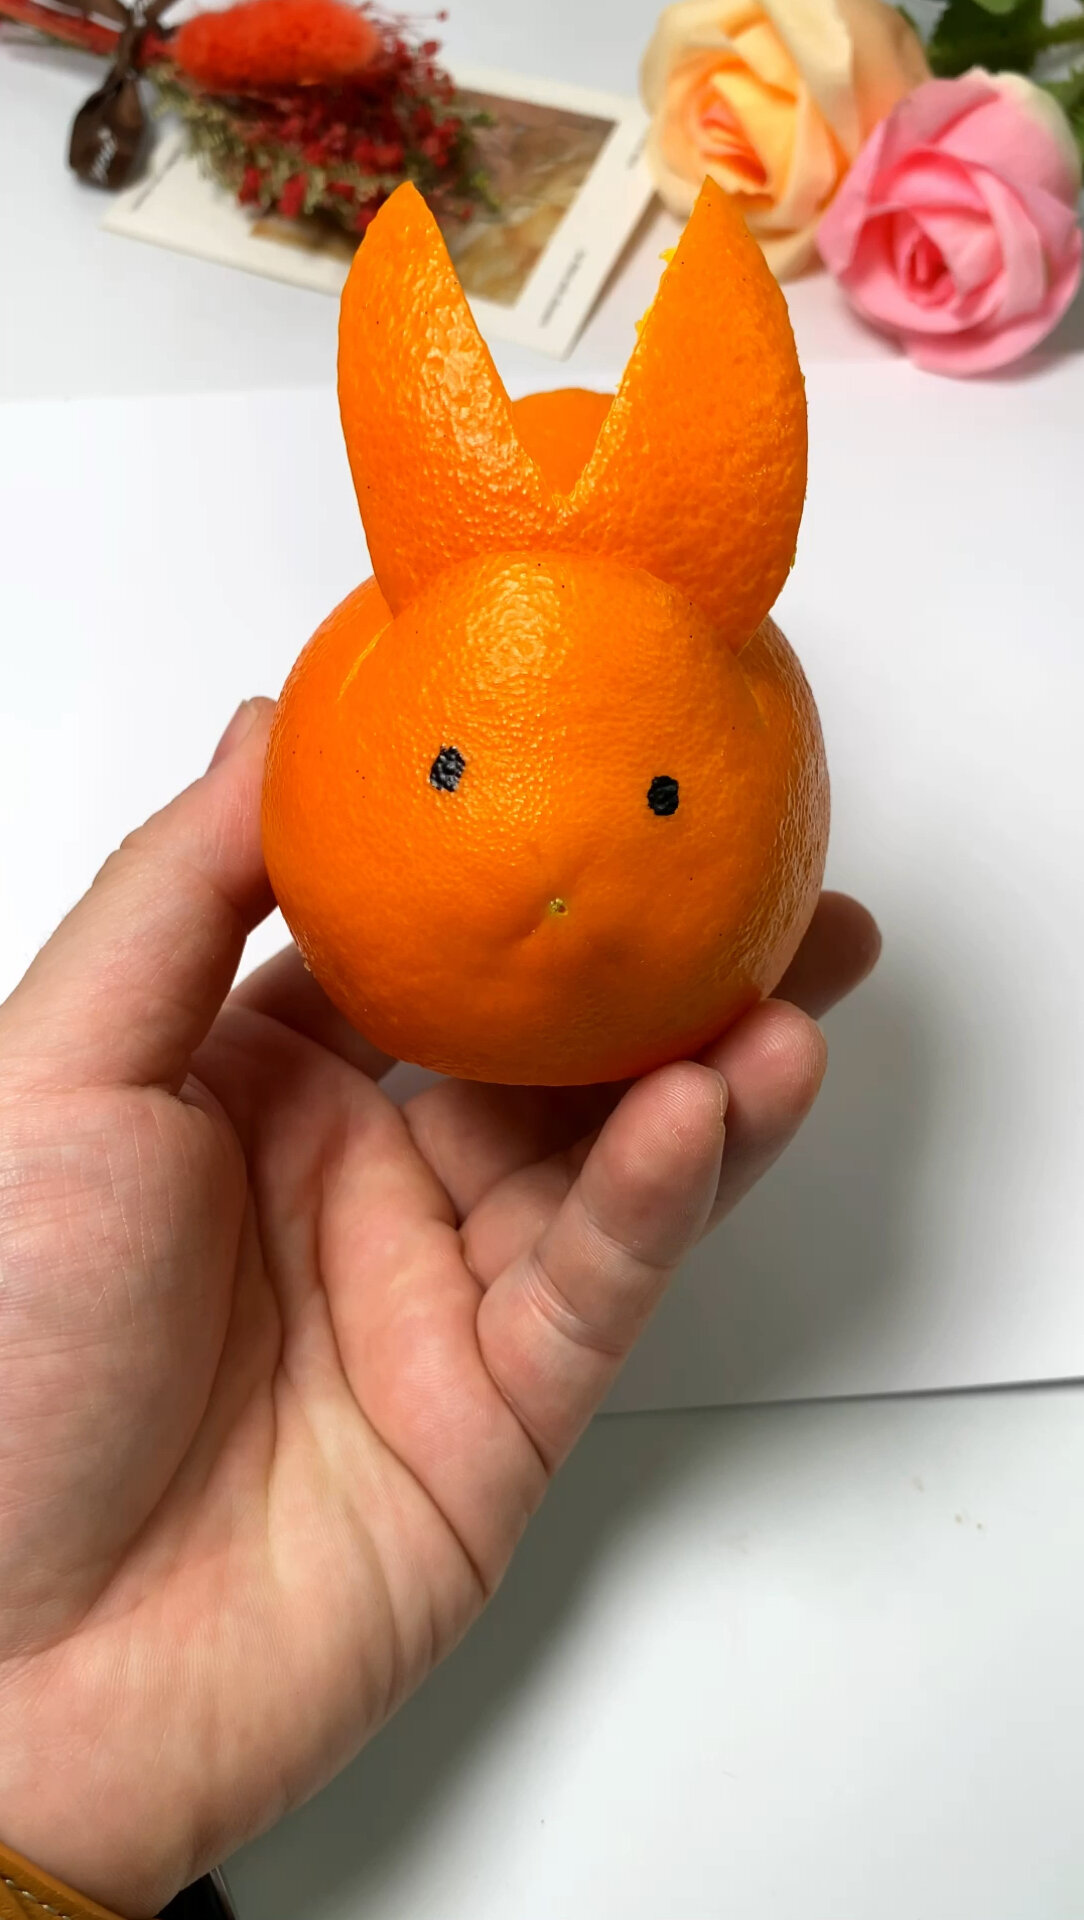 橙子做成小动物的造型图片